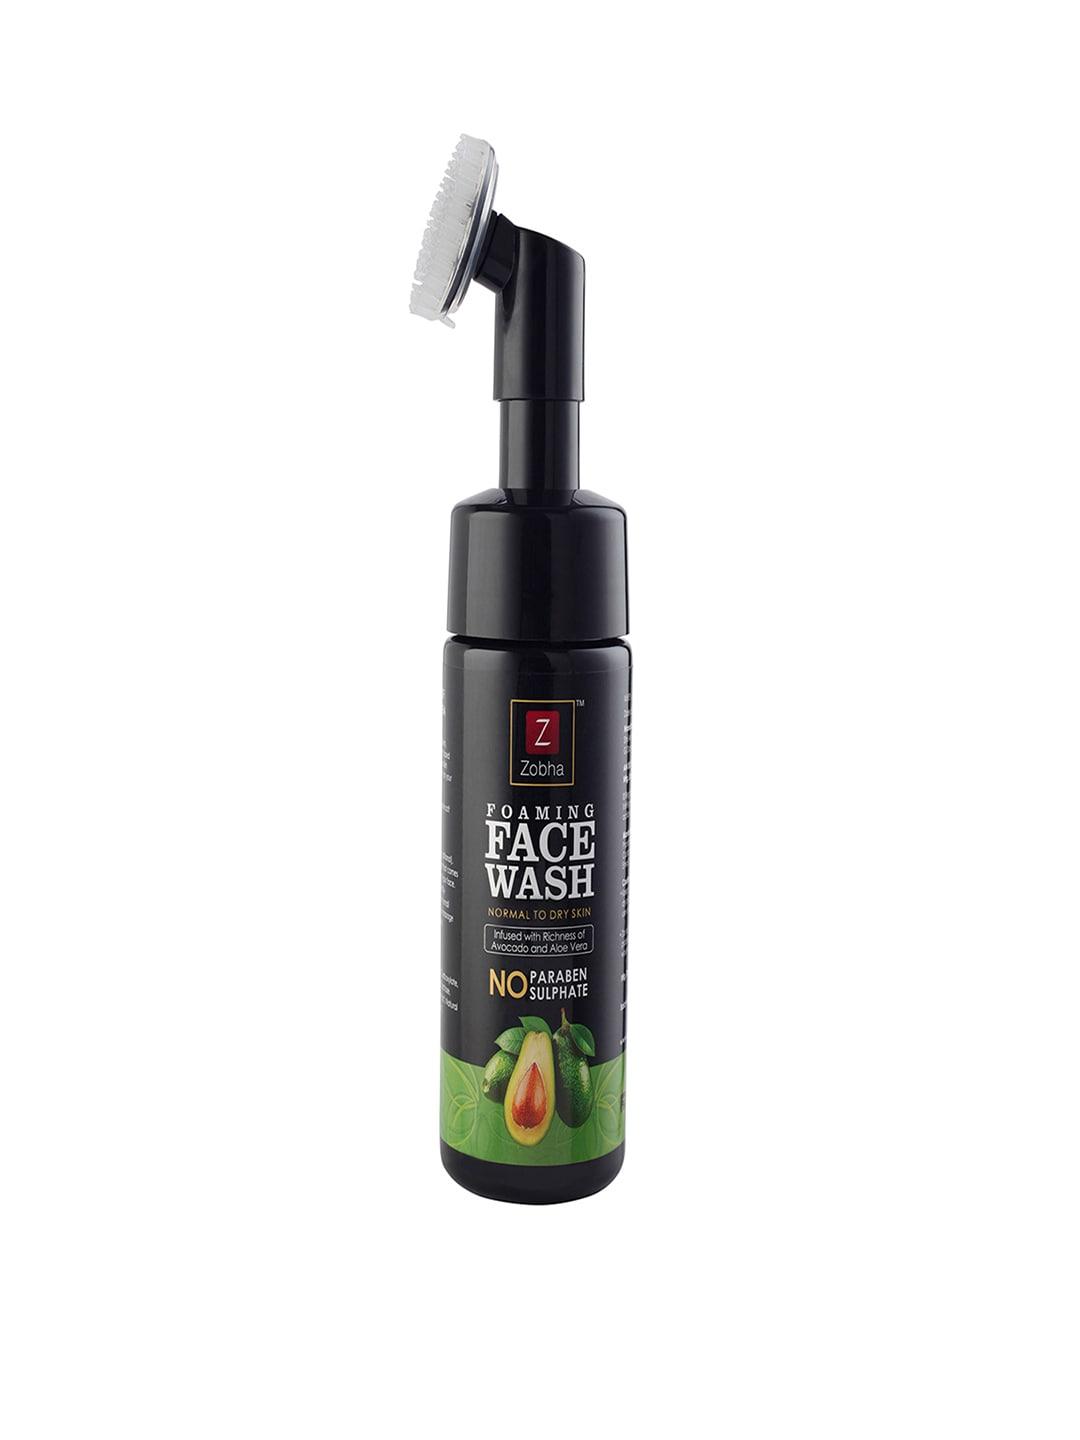 Zobha Foaming Face Wash with Avocado & Alovera - 150ml